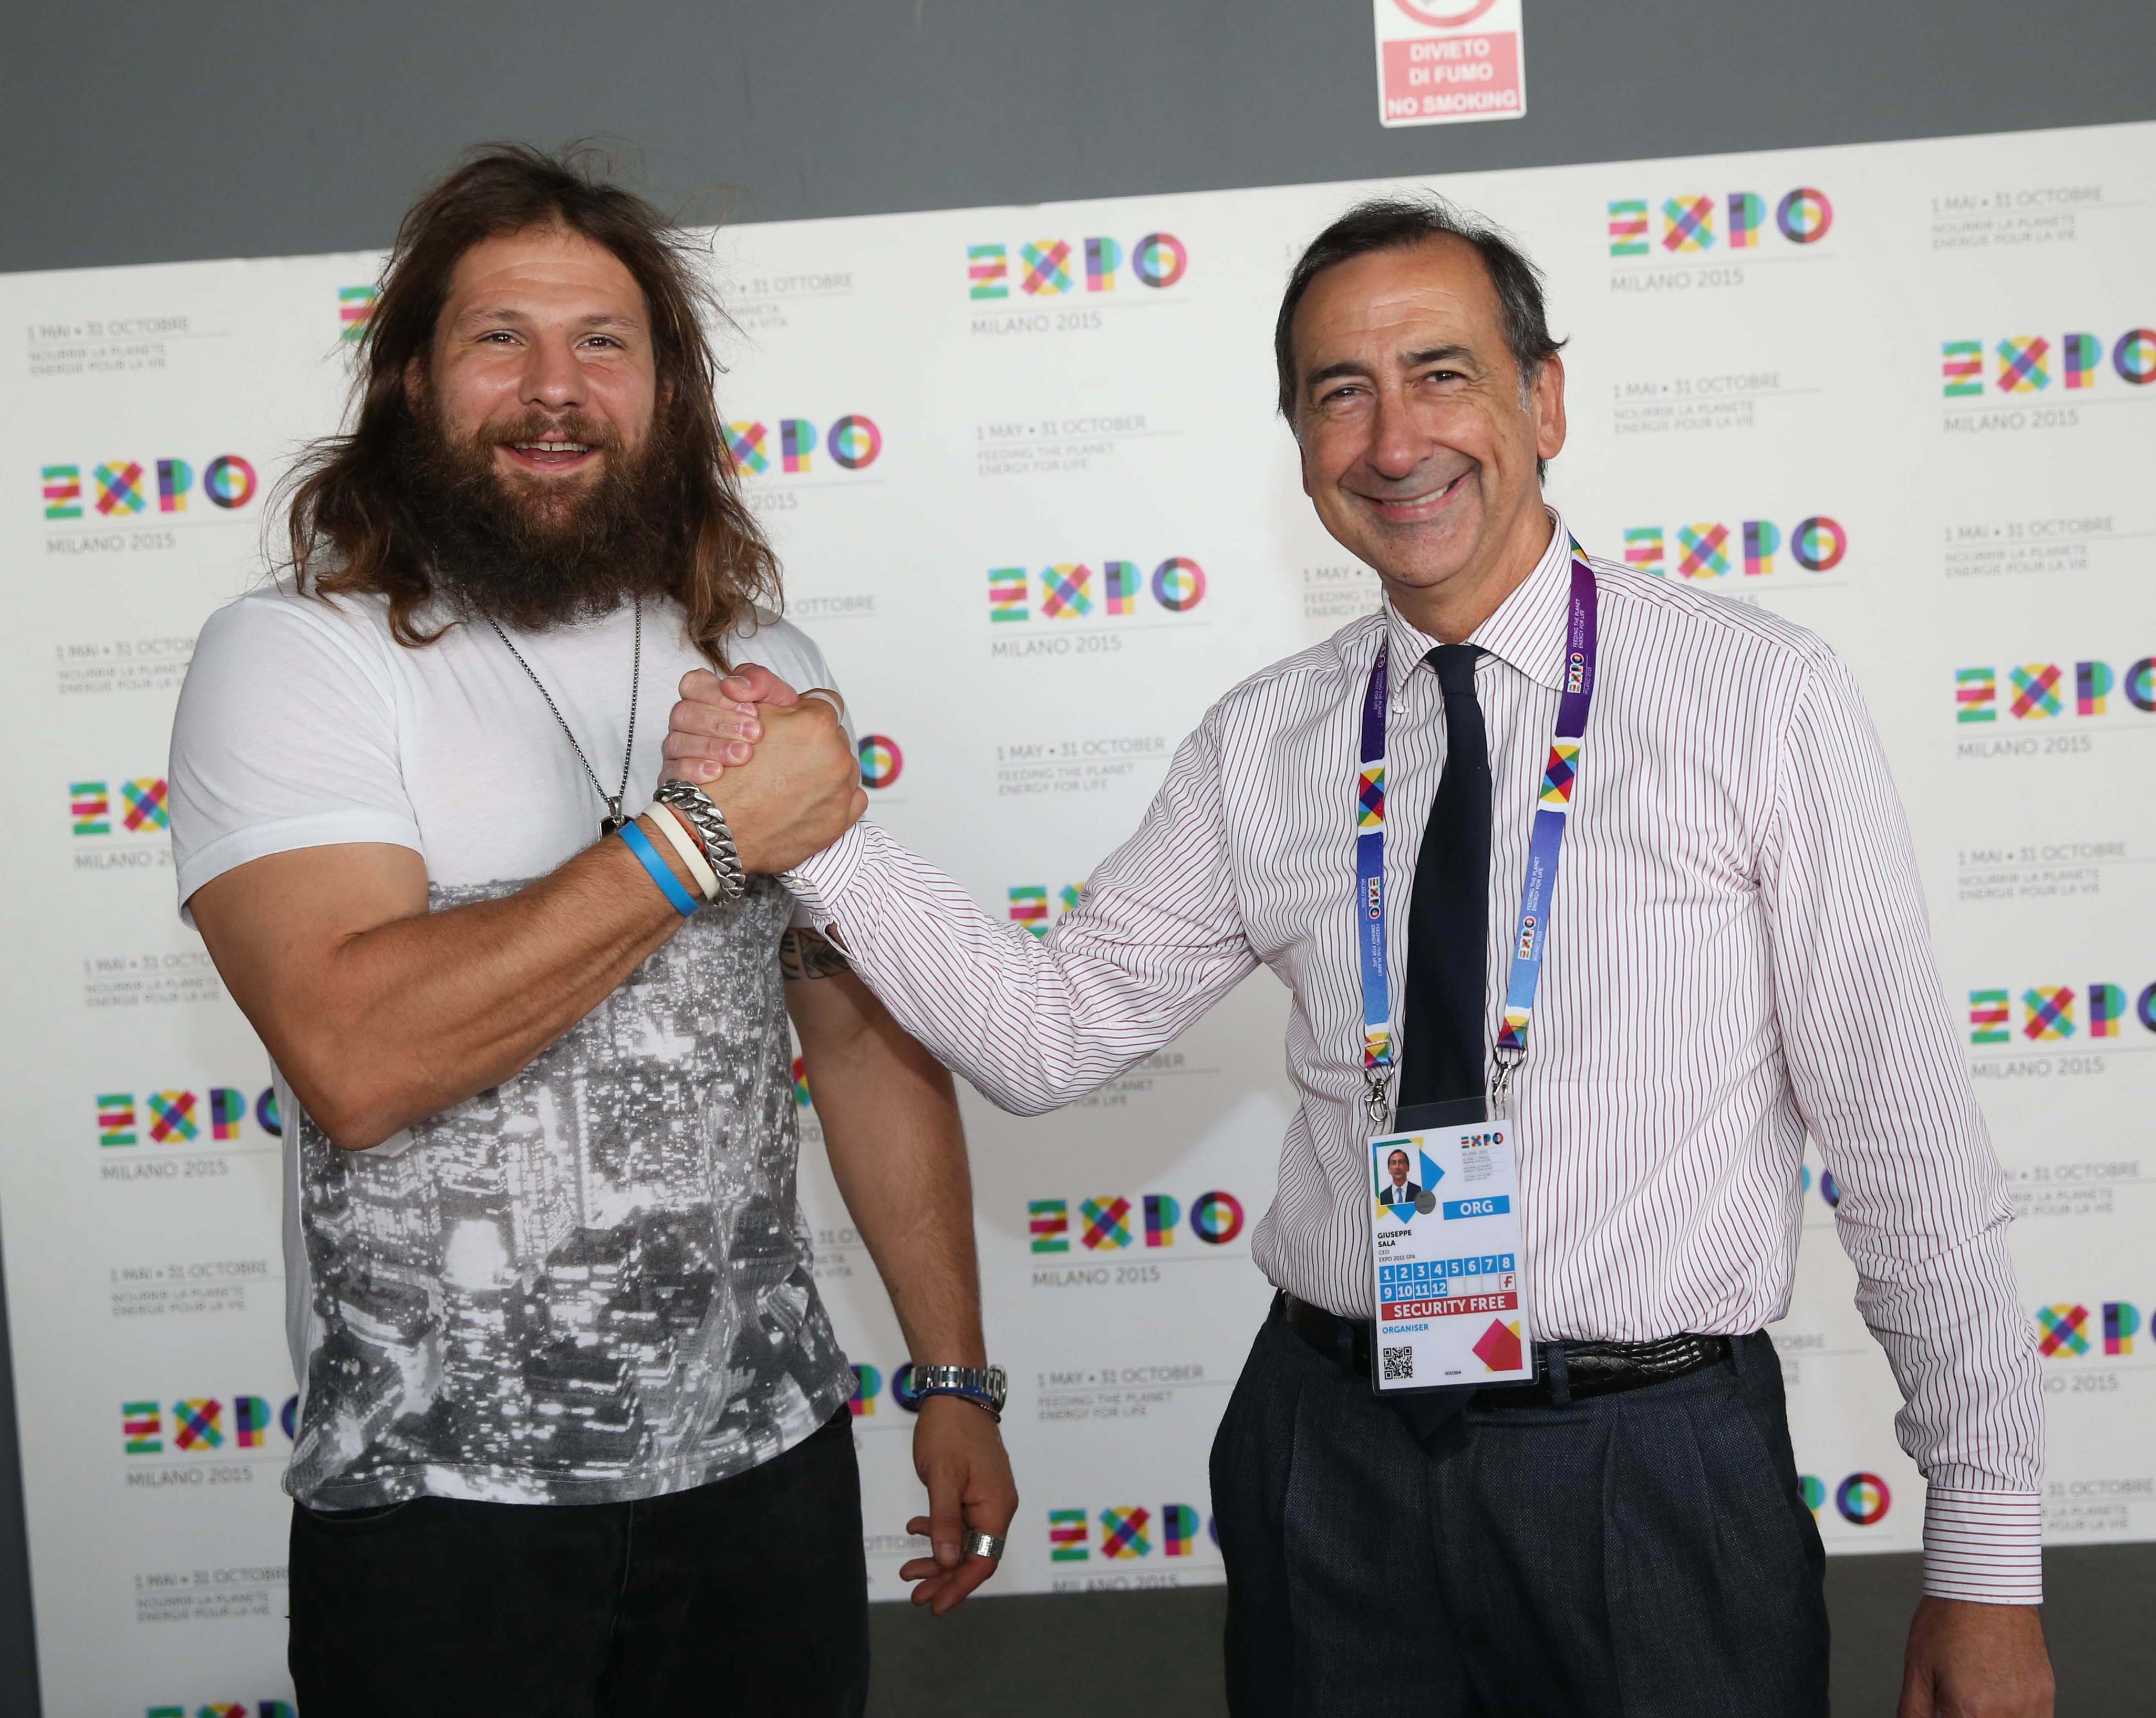 Expo Milano 2015, Martin Castrogiovanni in visita all’Esposizione Universale